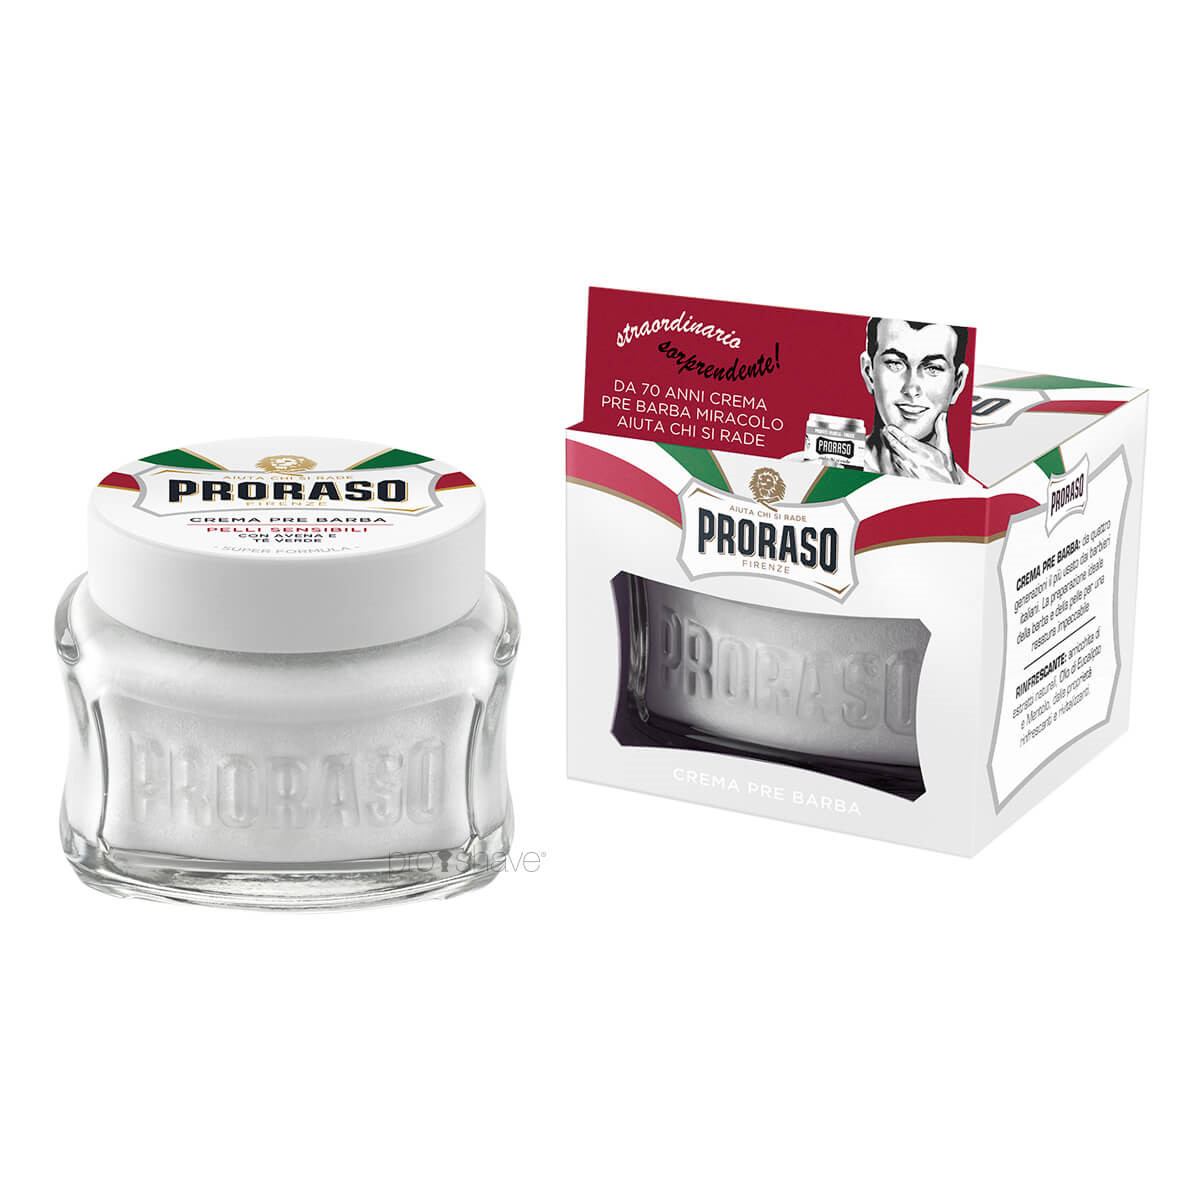 Proraso Preshave Cream - Sensitive, Grøn Te & Havre, 100 ml.